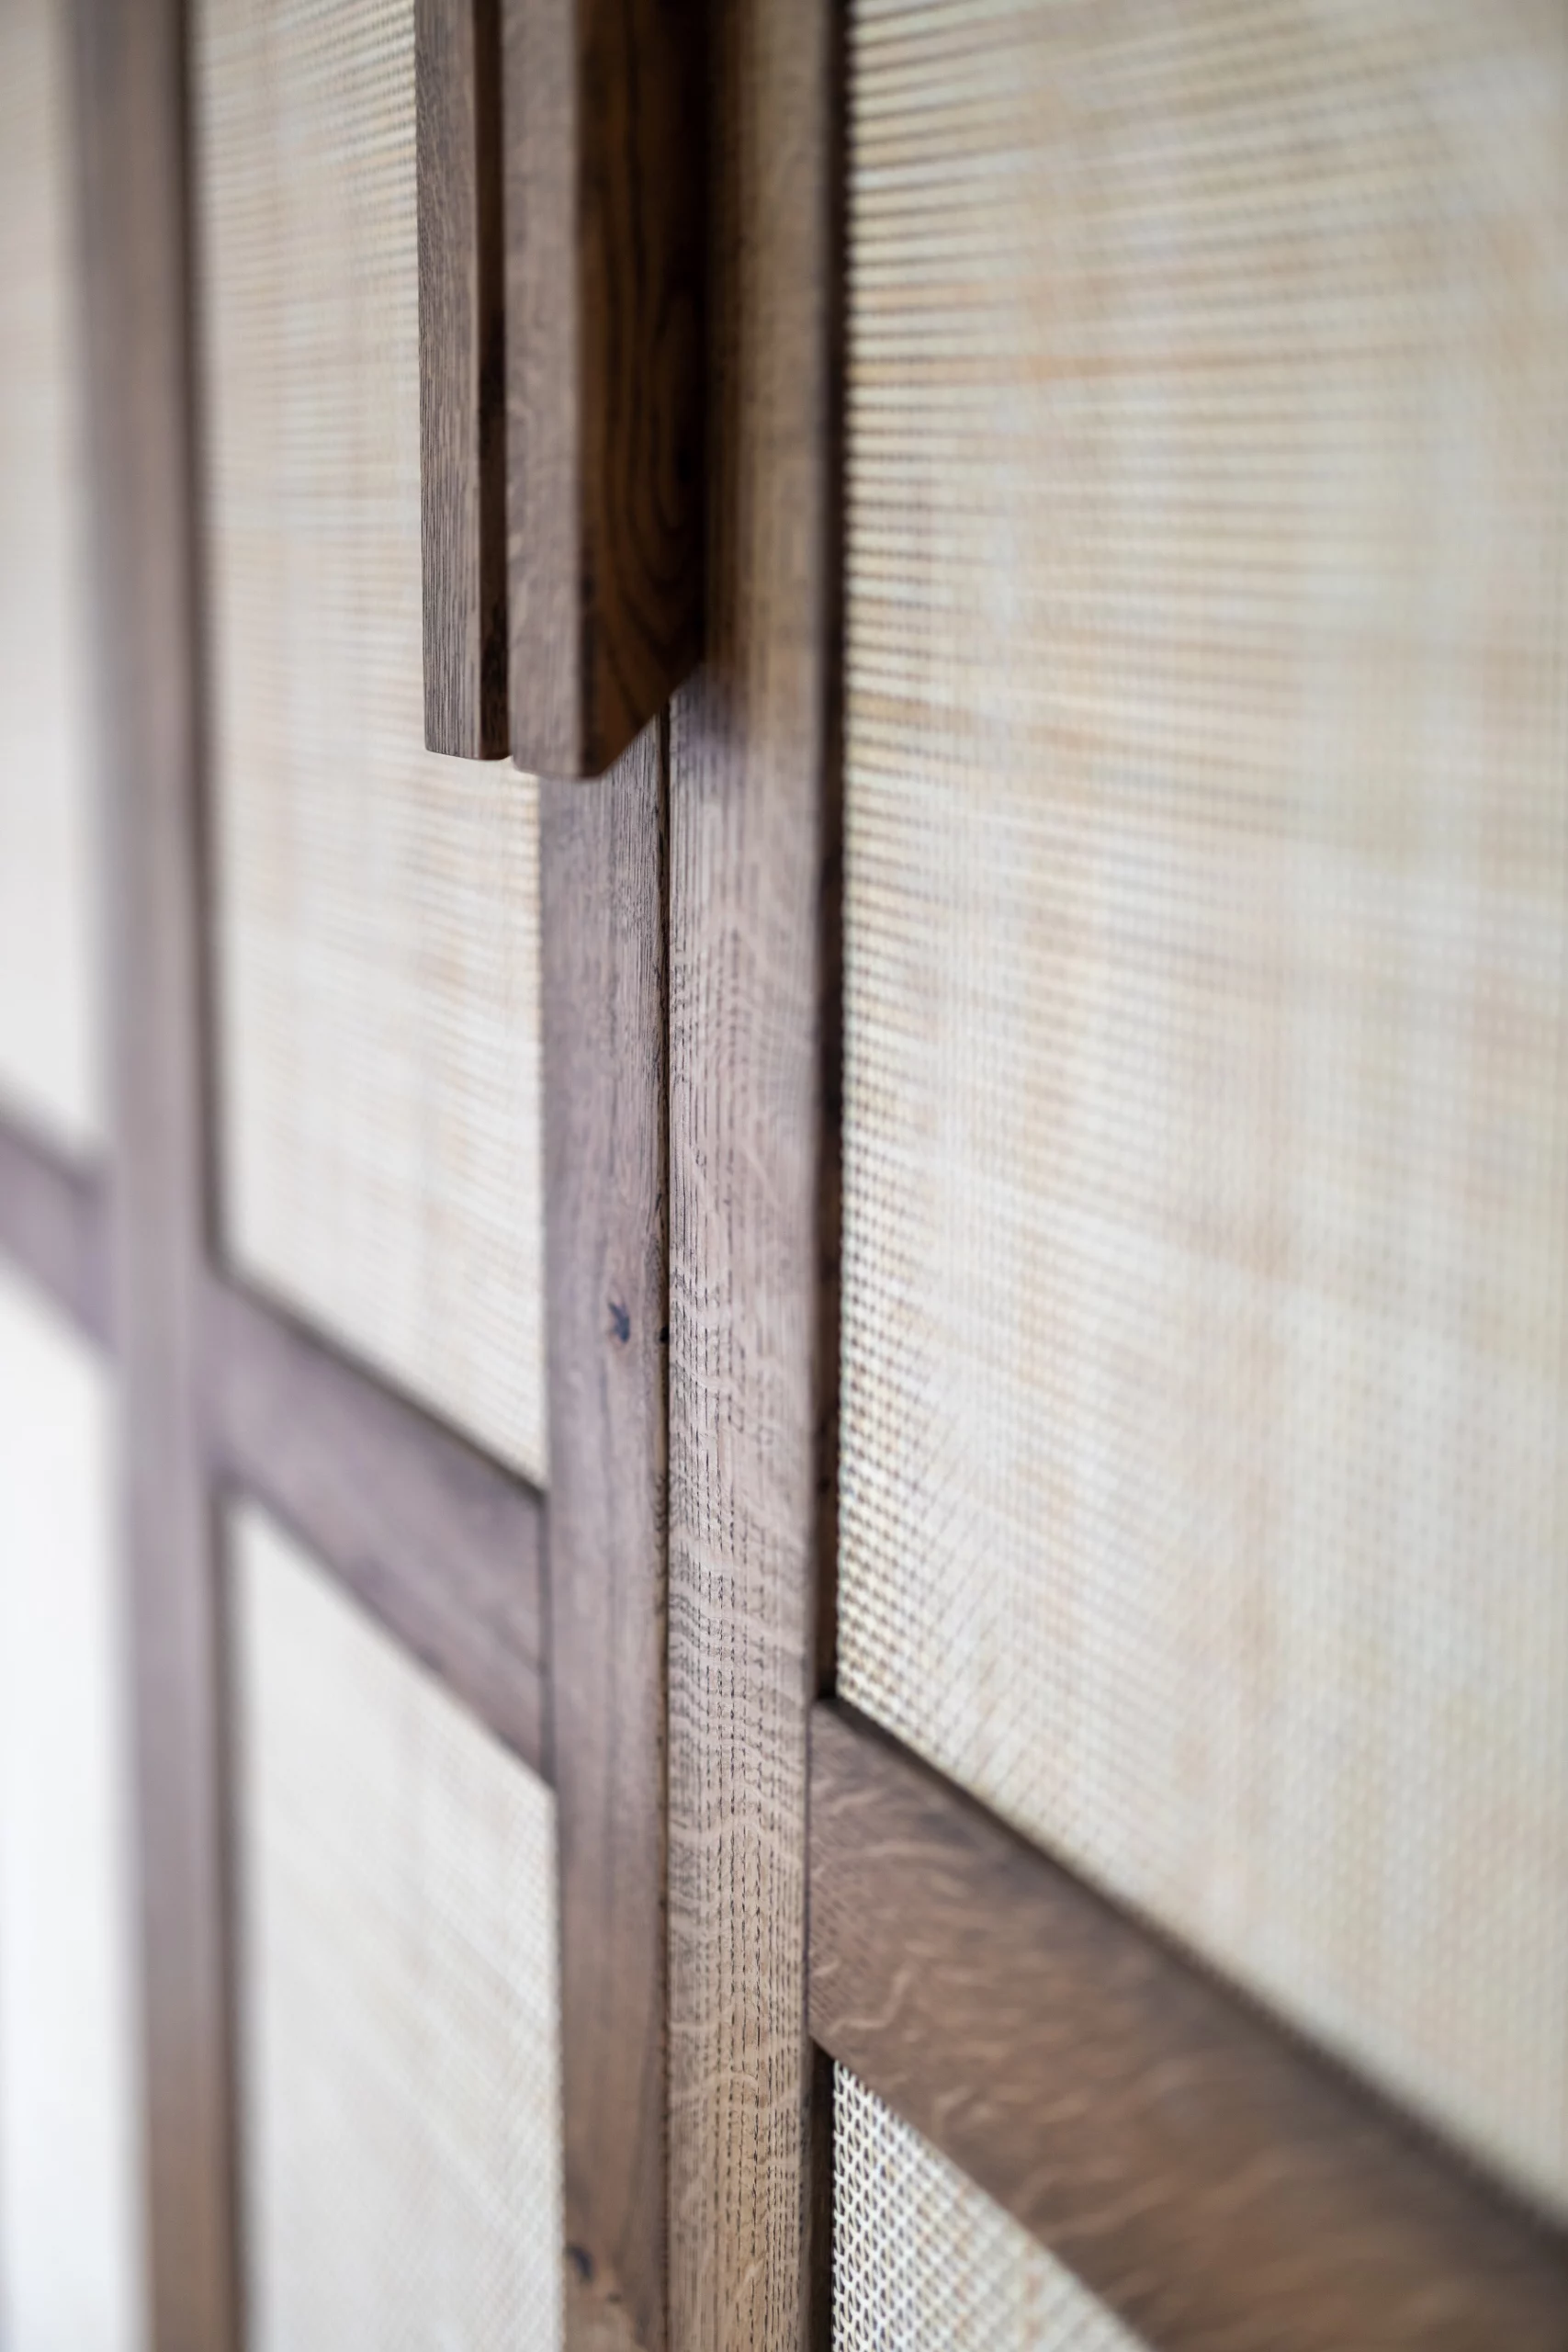 Japandi interieur is een interieurstijl die scandinavisch en modern Japans combineert. Beide interieur stijlen hebben een minimalistische basis en een focus op warmte en natuurlijke elementen. Als kenmerk heeft de Japandi stijl neutrale effen aardtinten en patronen. Dit wordt vervolgens gecombineerd met minimalisme en strakke lijnen. Binnen Japandi zijn meubels en decoratie gemaakt van natuurlijke materialen. Decoratie bestaat vaak uit riet, hout, bamboe en linnen.